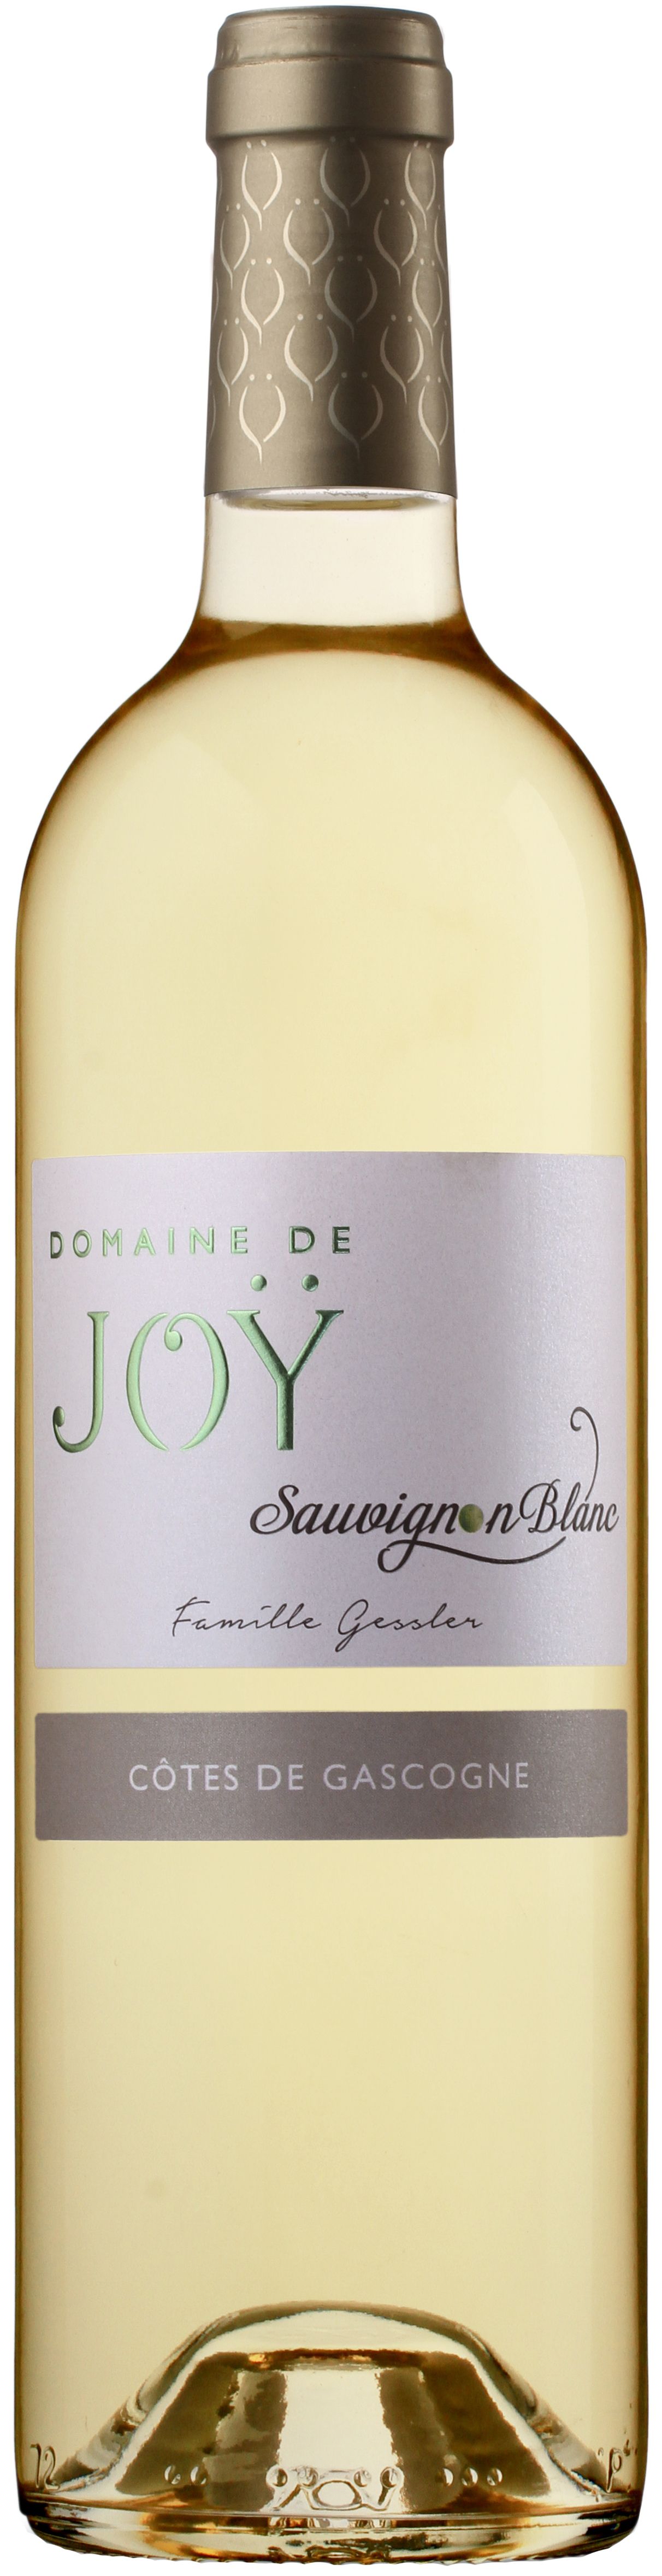 Domaine De Joy, Sauvignon Blanc, 2015